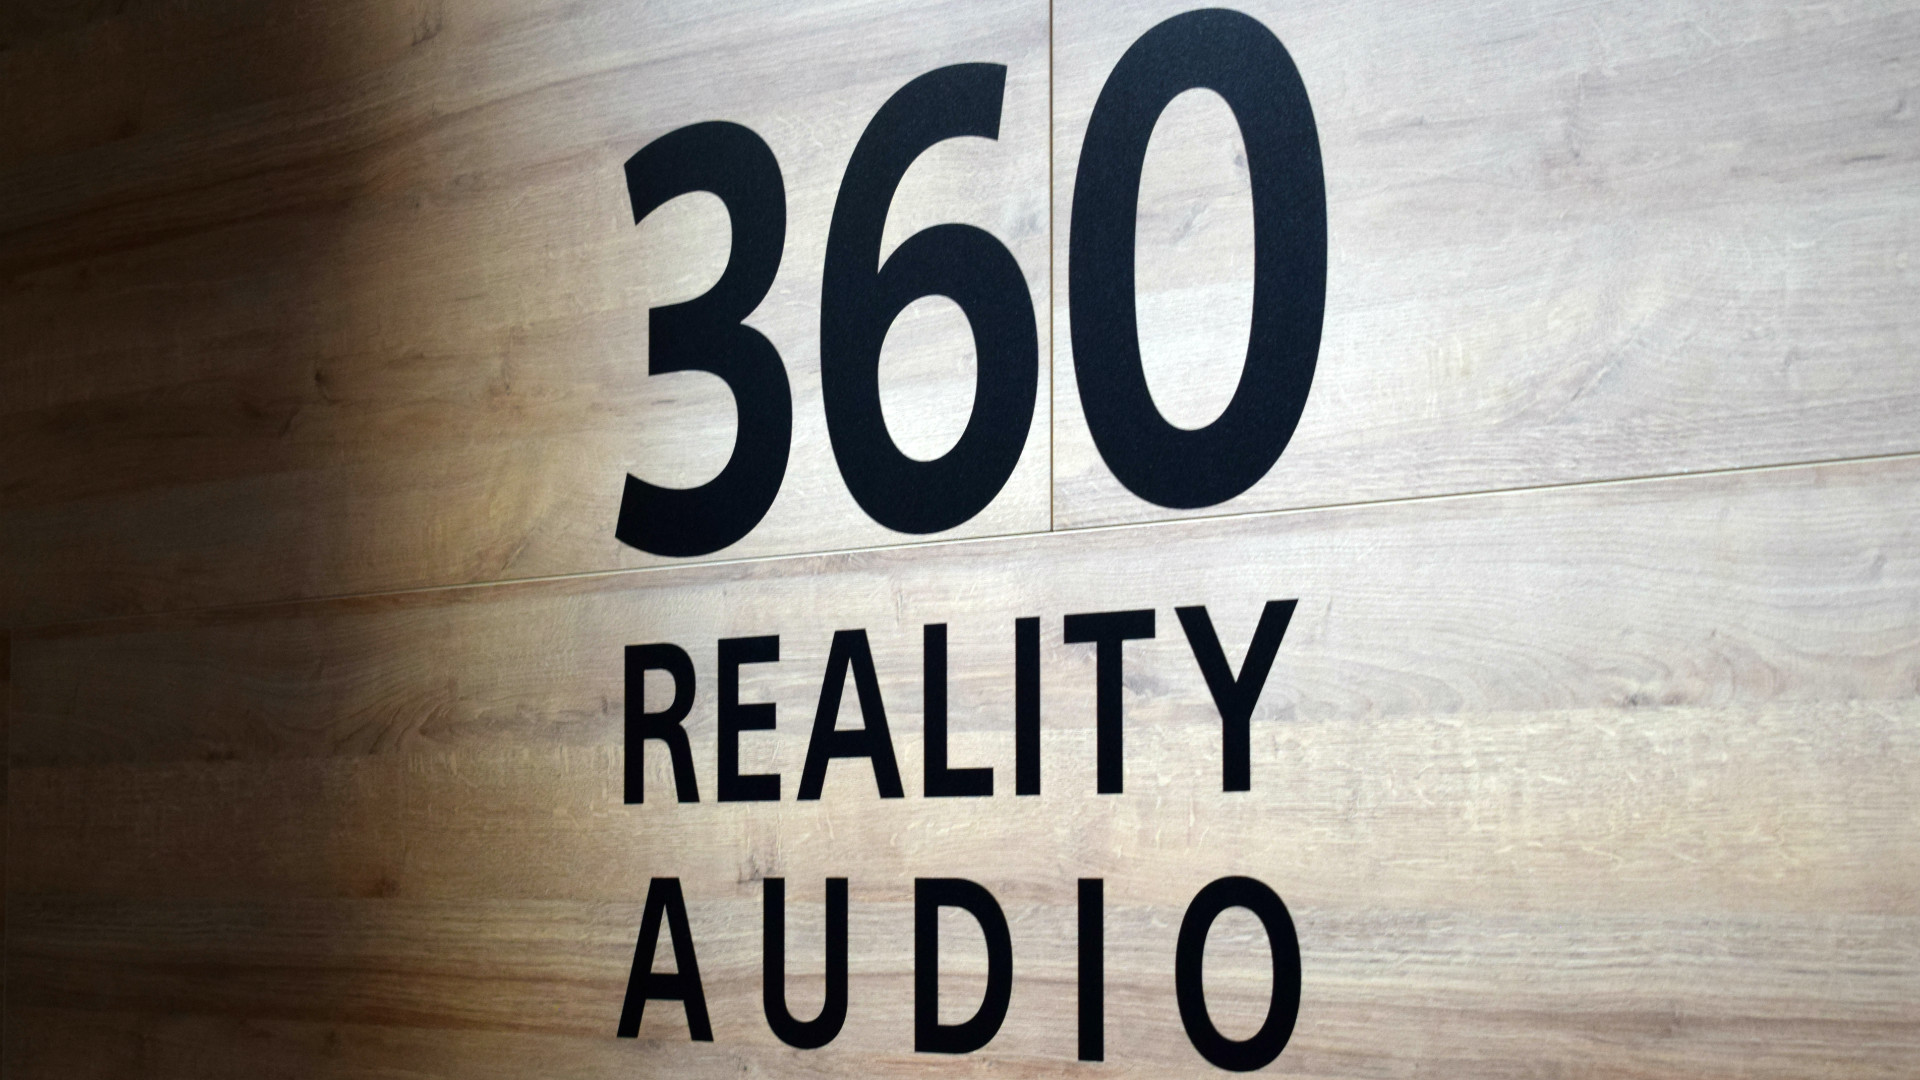 Sony 360 Reality Audio at IFA 2019